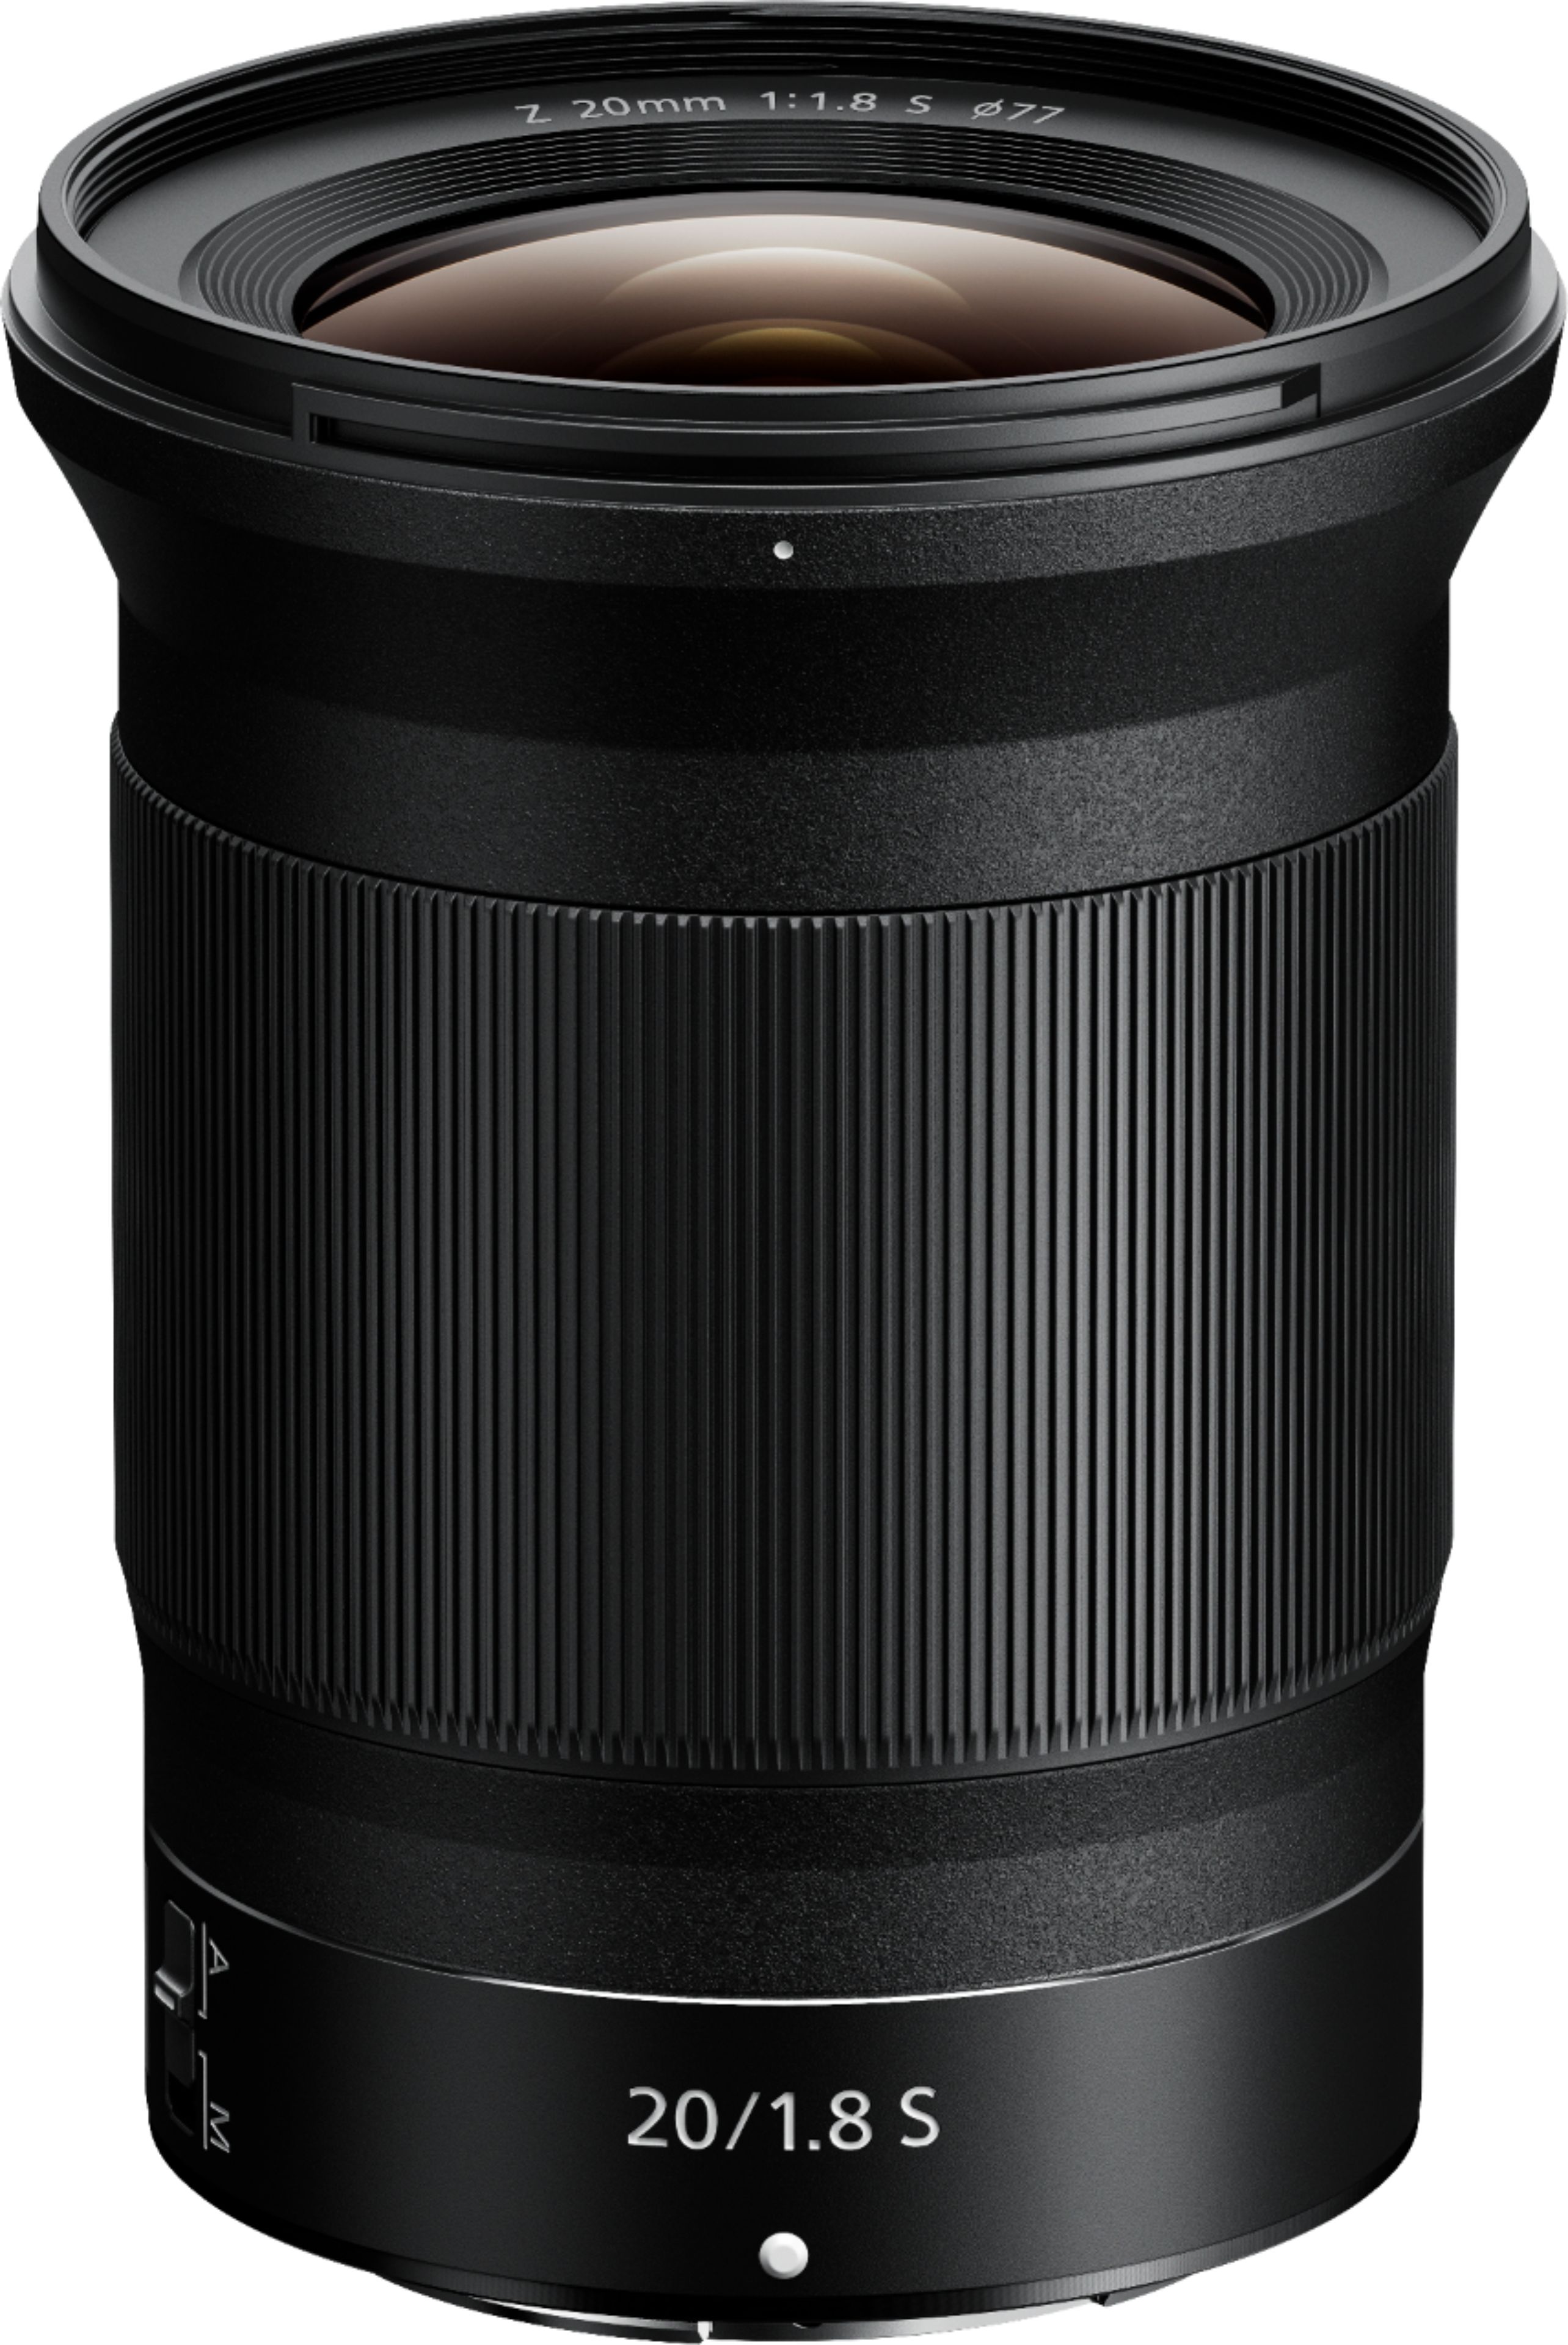 Nikon - Nikkor Z 20mm f/1.8 S Lens